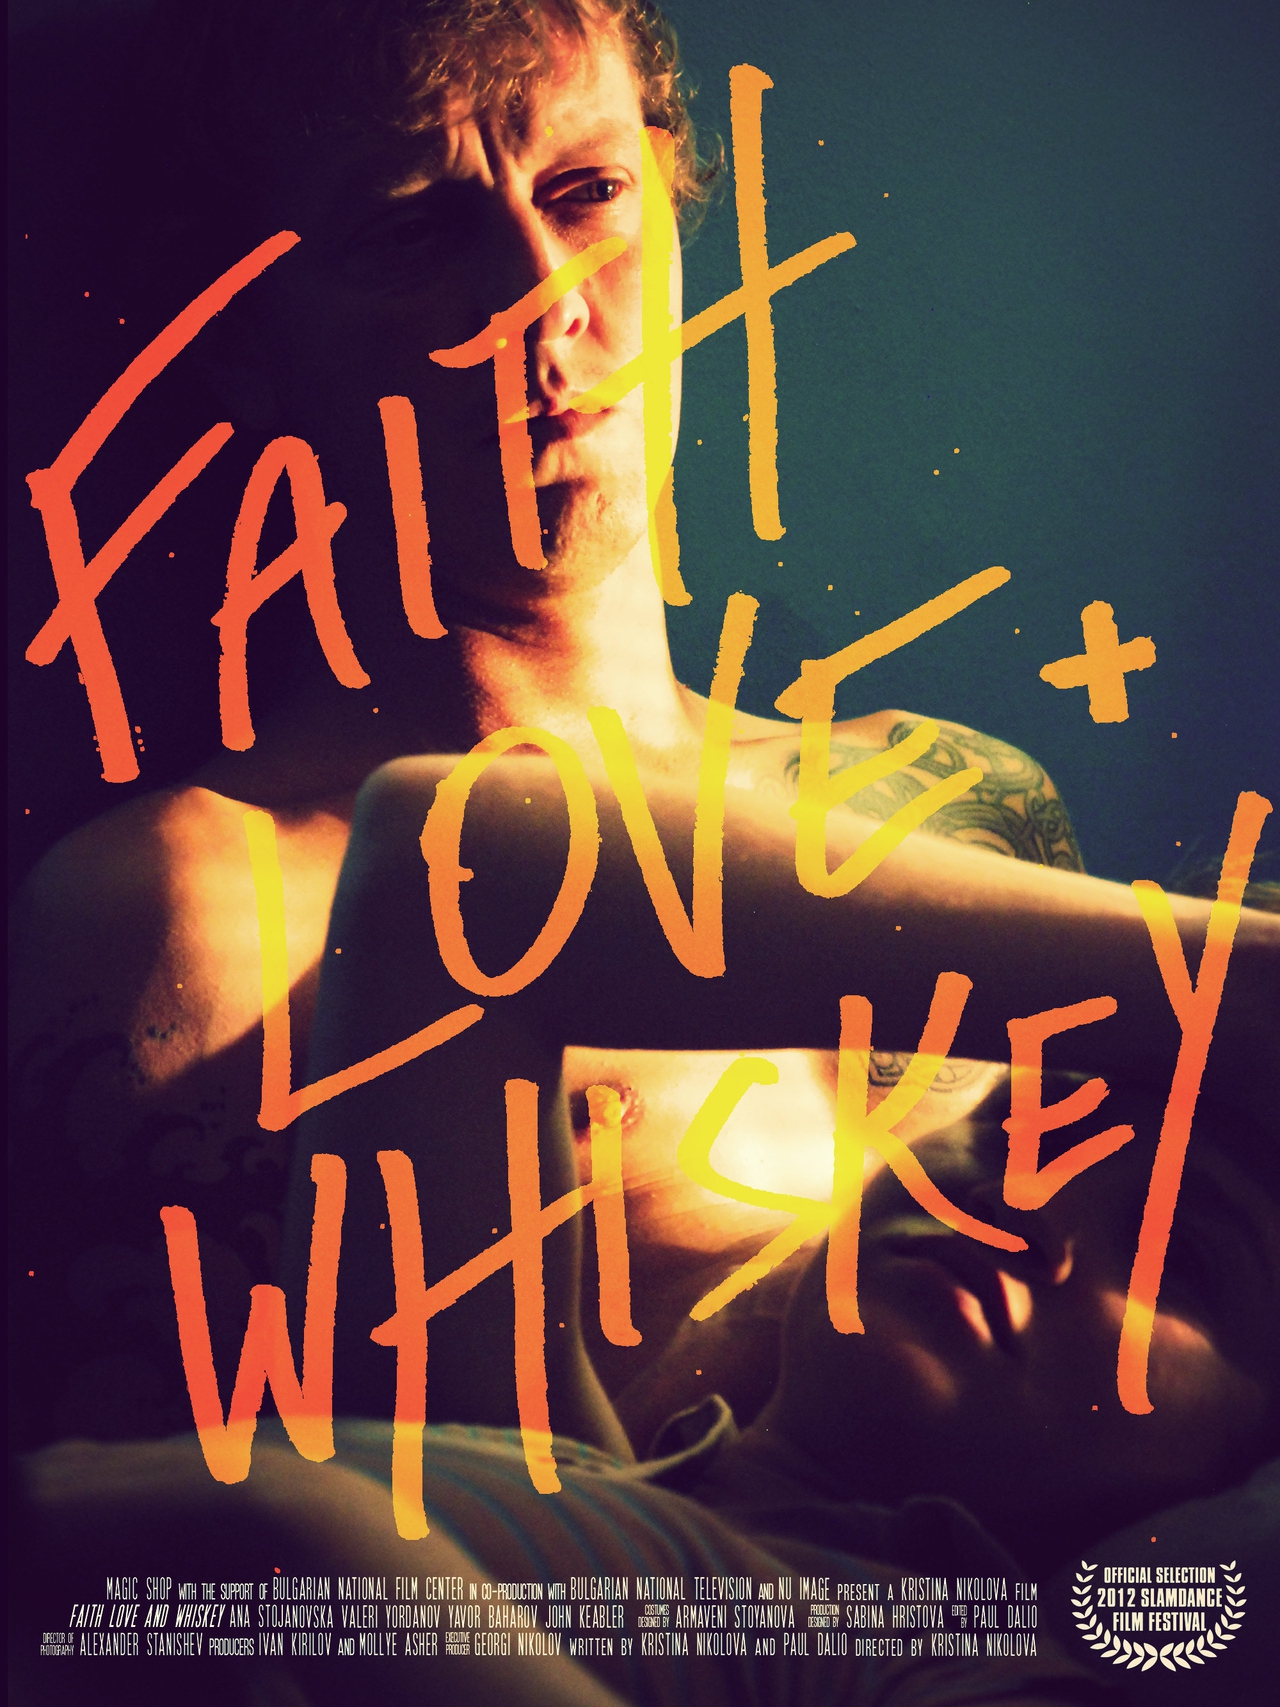  فیلم سینمایی Faith, Love + Whiskey به کارگردانی Kristina Nikolova Dalio